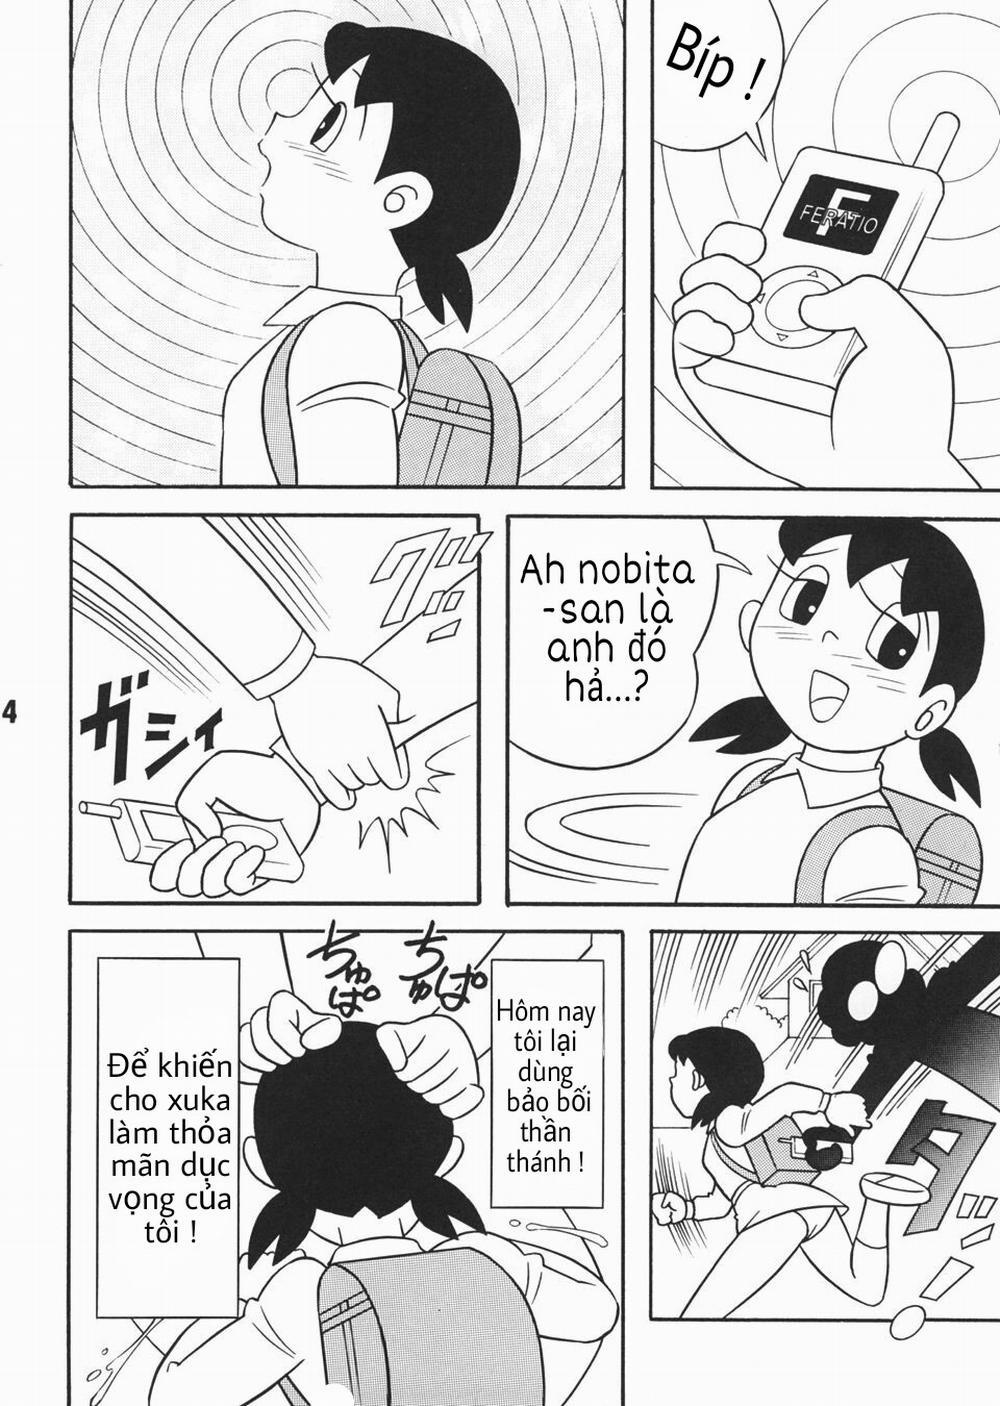 Tuyển Tập Doraemon Doujinshi 18+ Chương 3 M y ph t s ng g i d c Trang 2